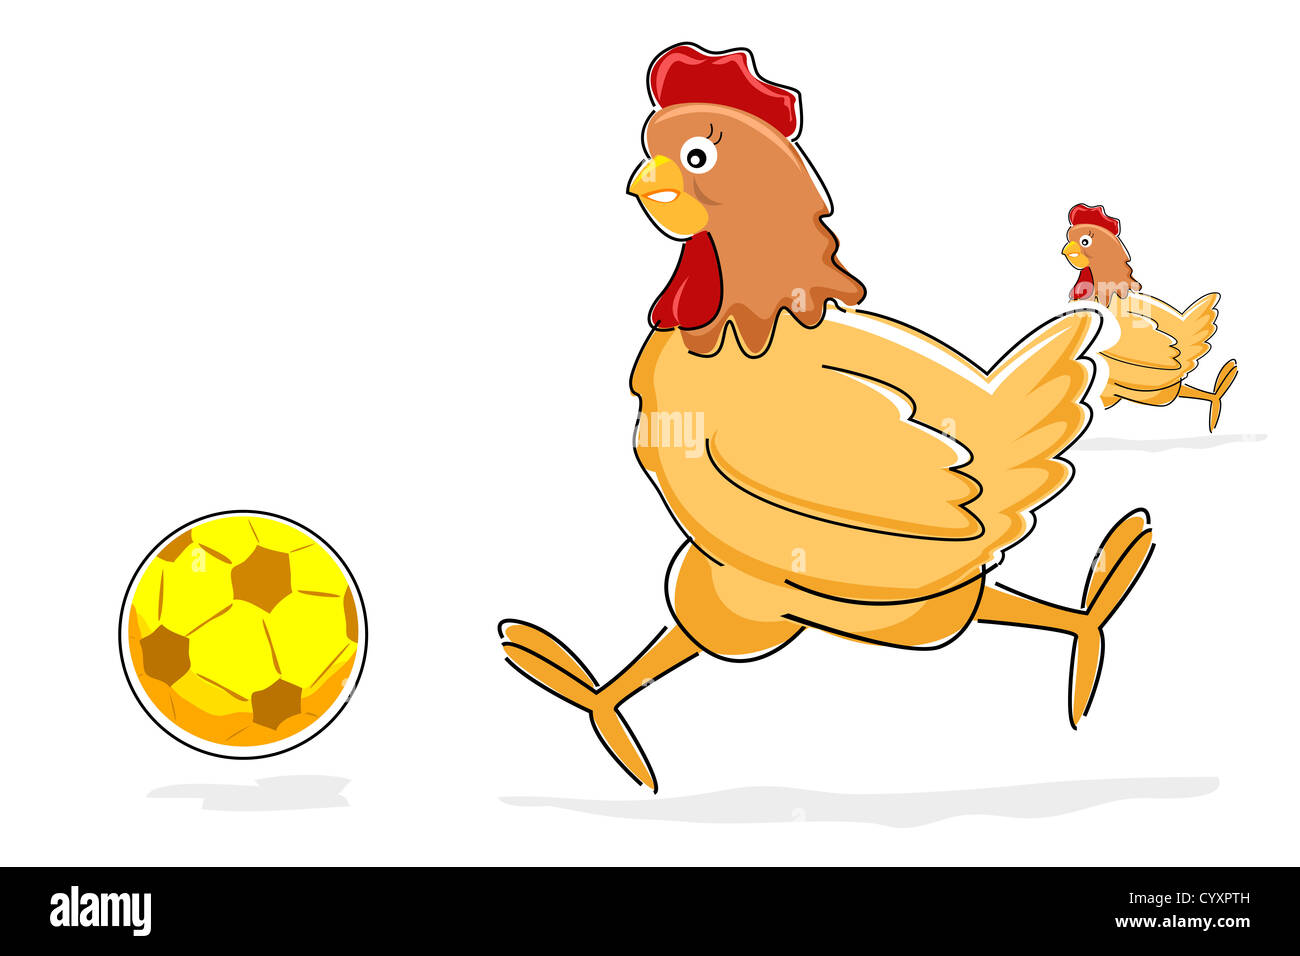 Illustrazione della gallina giocando con il pallone da calcio su sfondo bianco Foto Stock